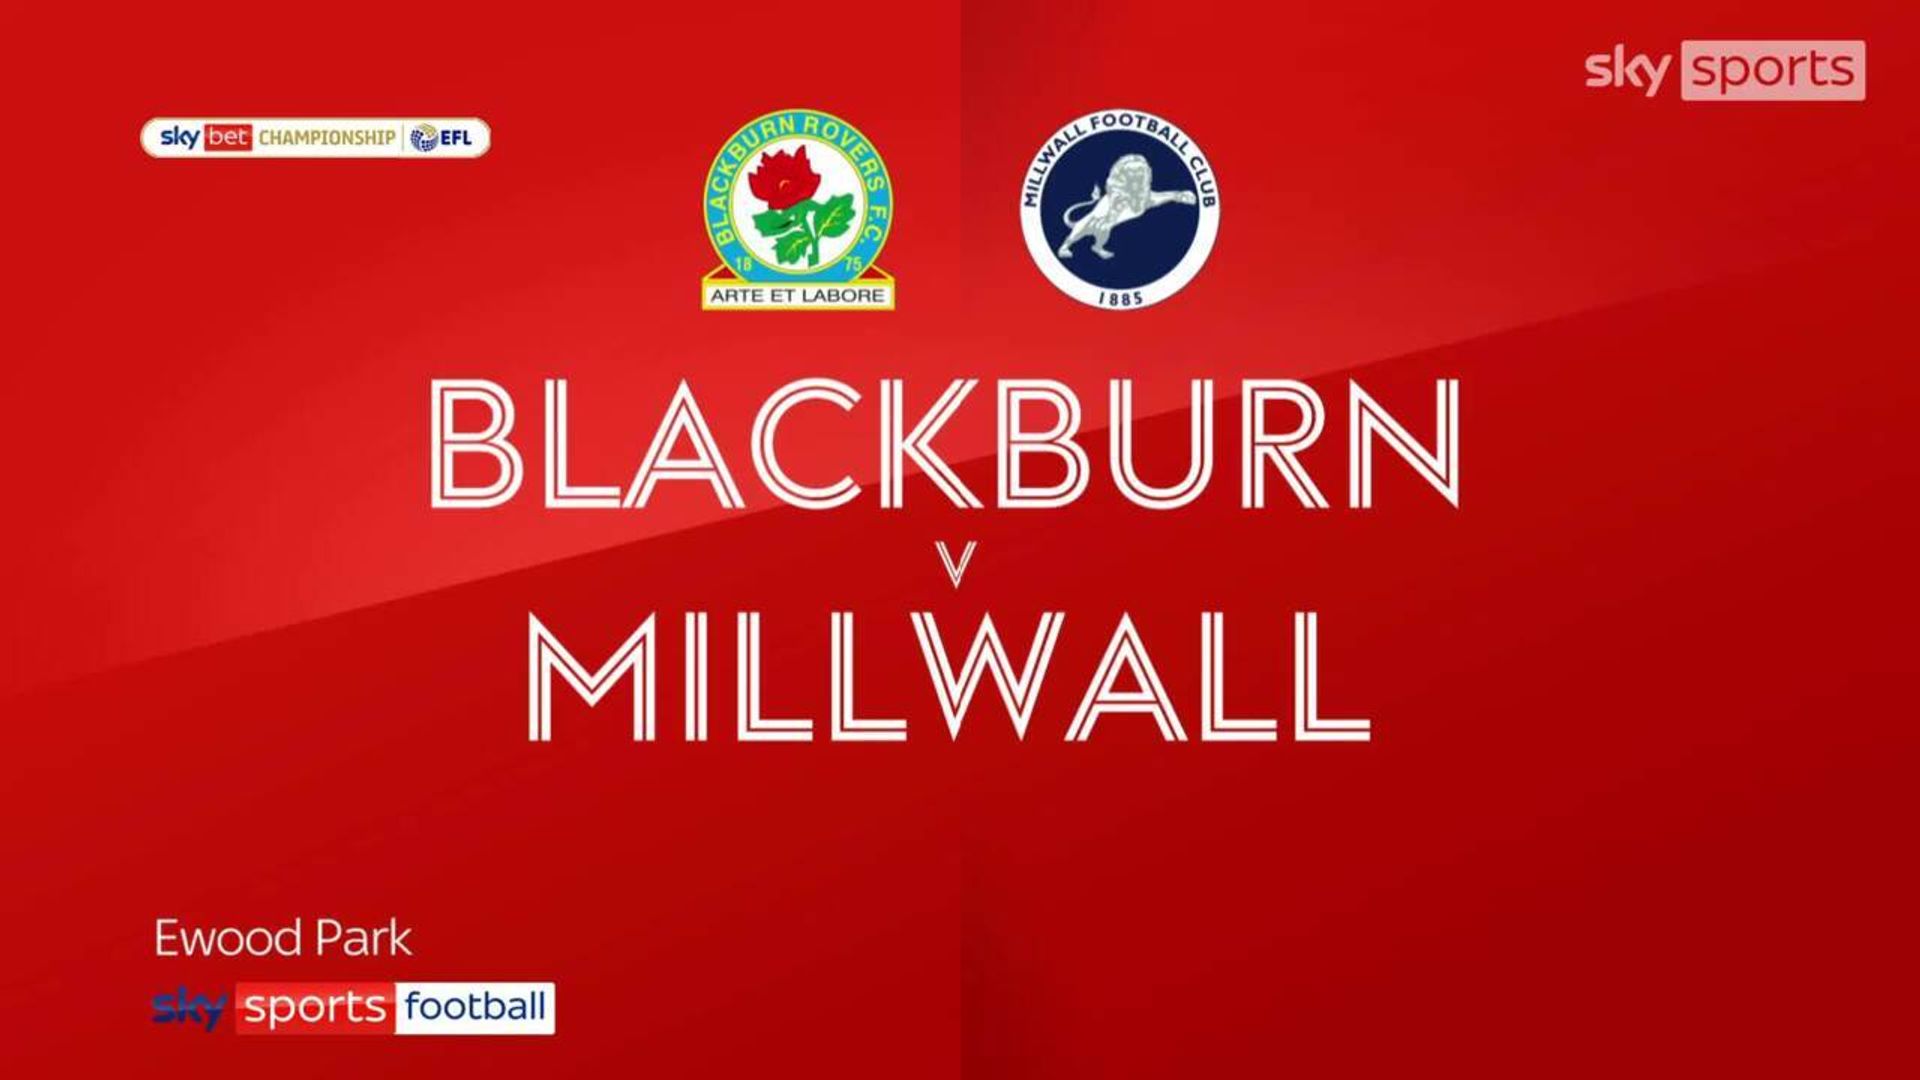 Blackburn 2-1 Millwall